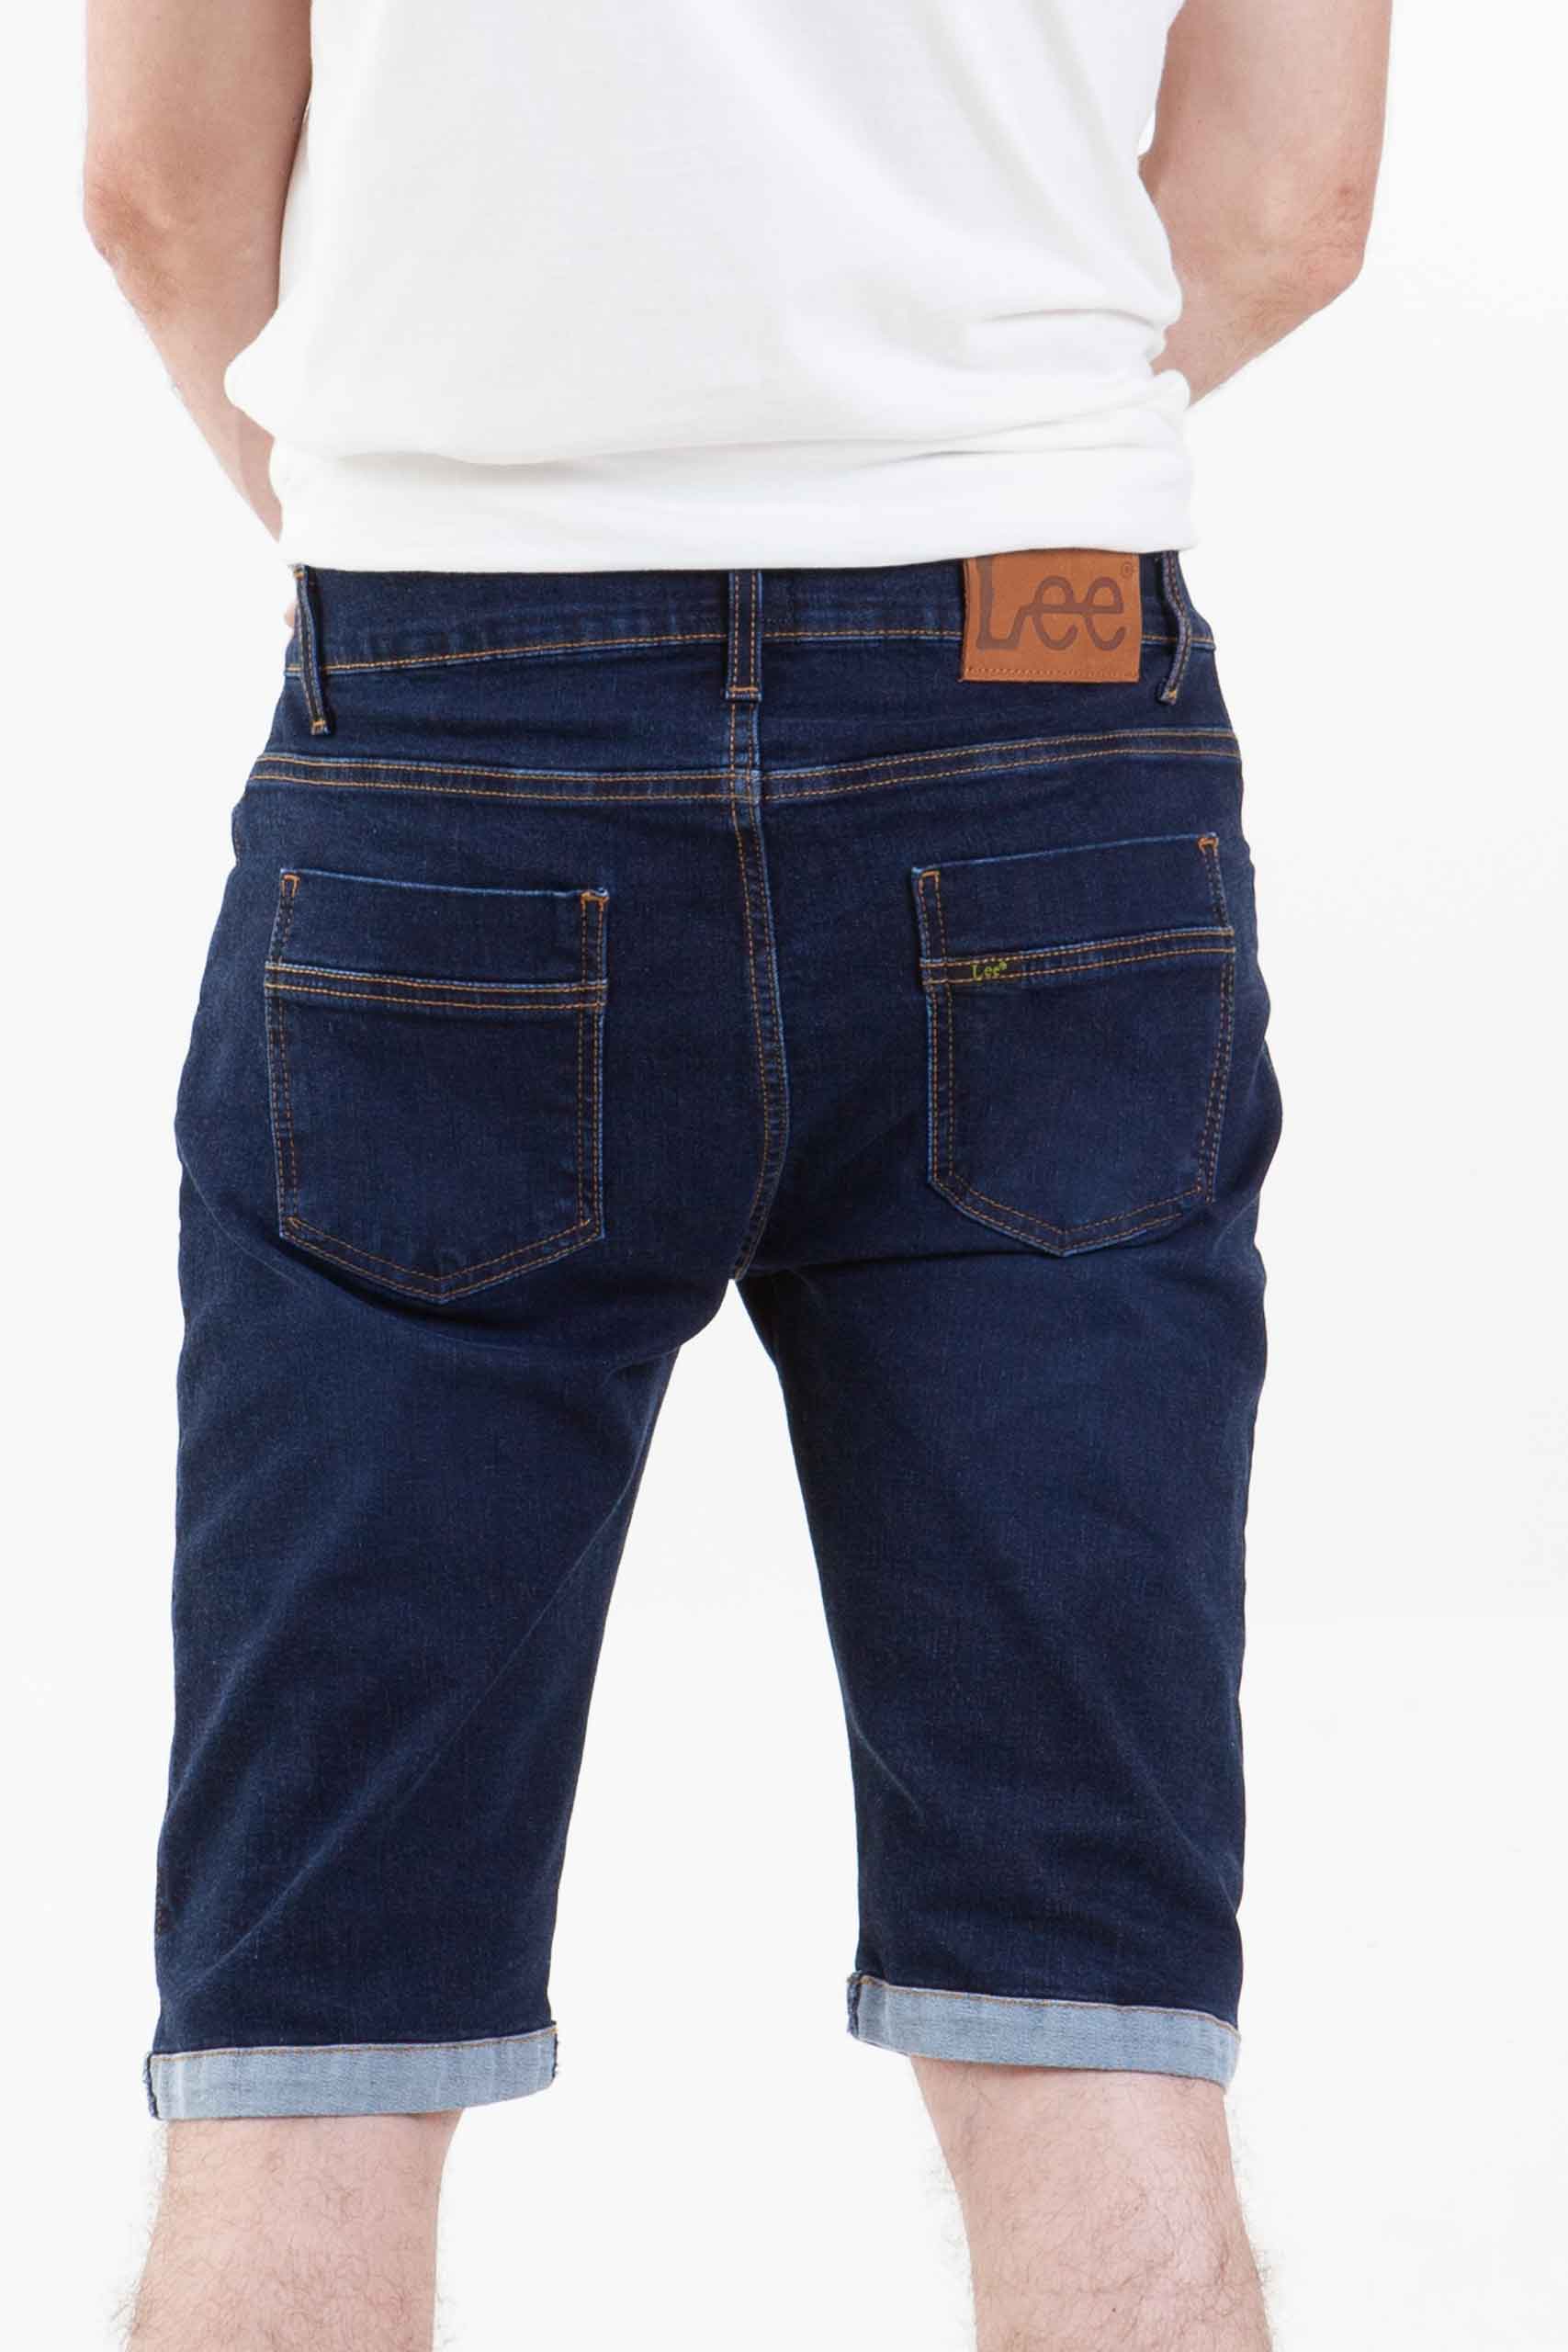 Vista posterior de bermuda jean de color azul con dos bolsillos de marca lee